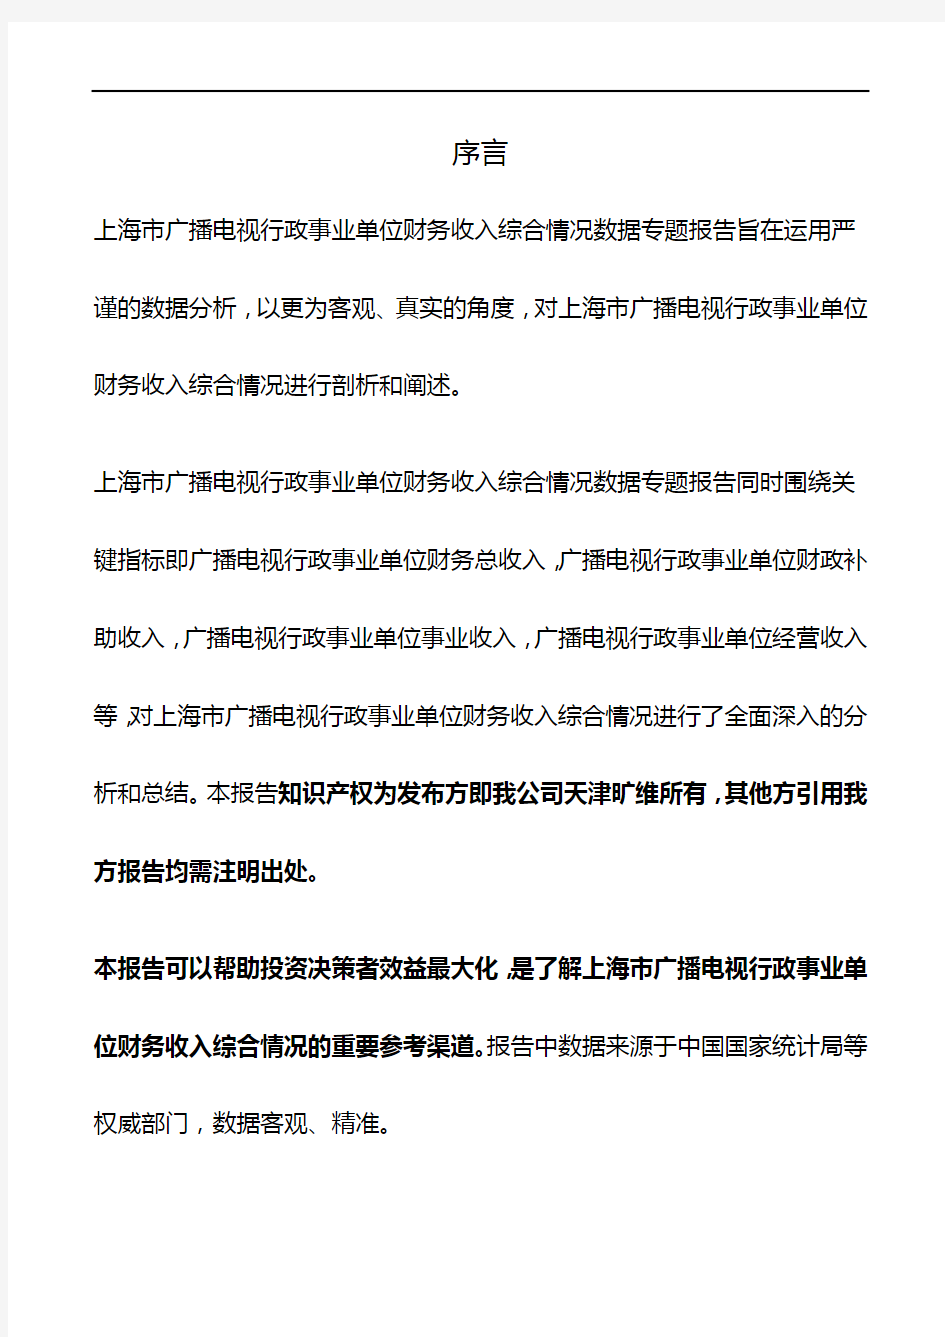 上海市广播电视行政事业单位财务收入综合情况3年数据专题报告2019版